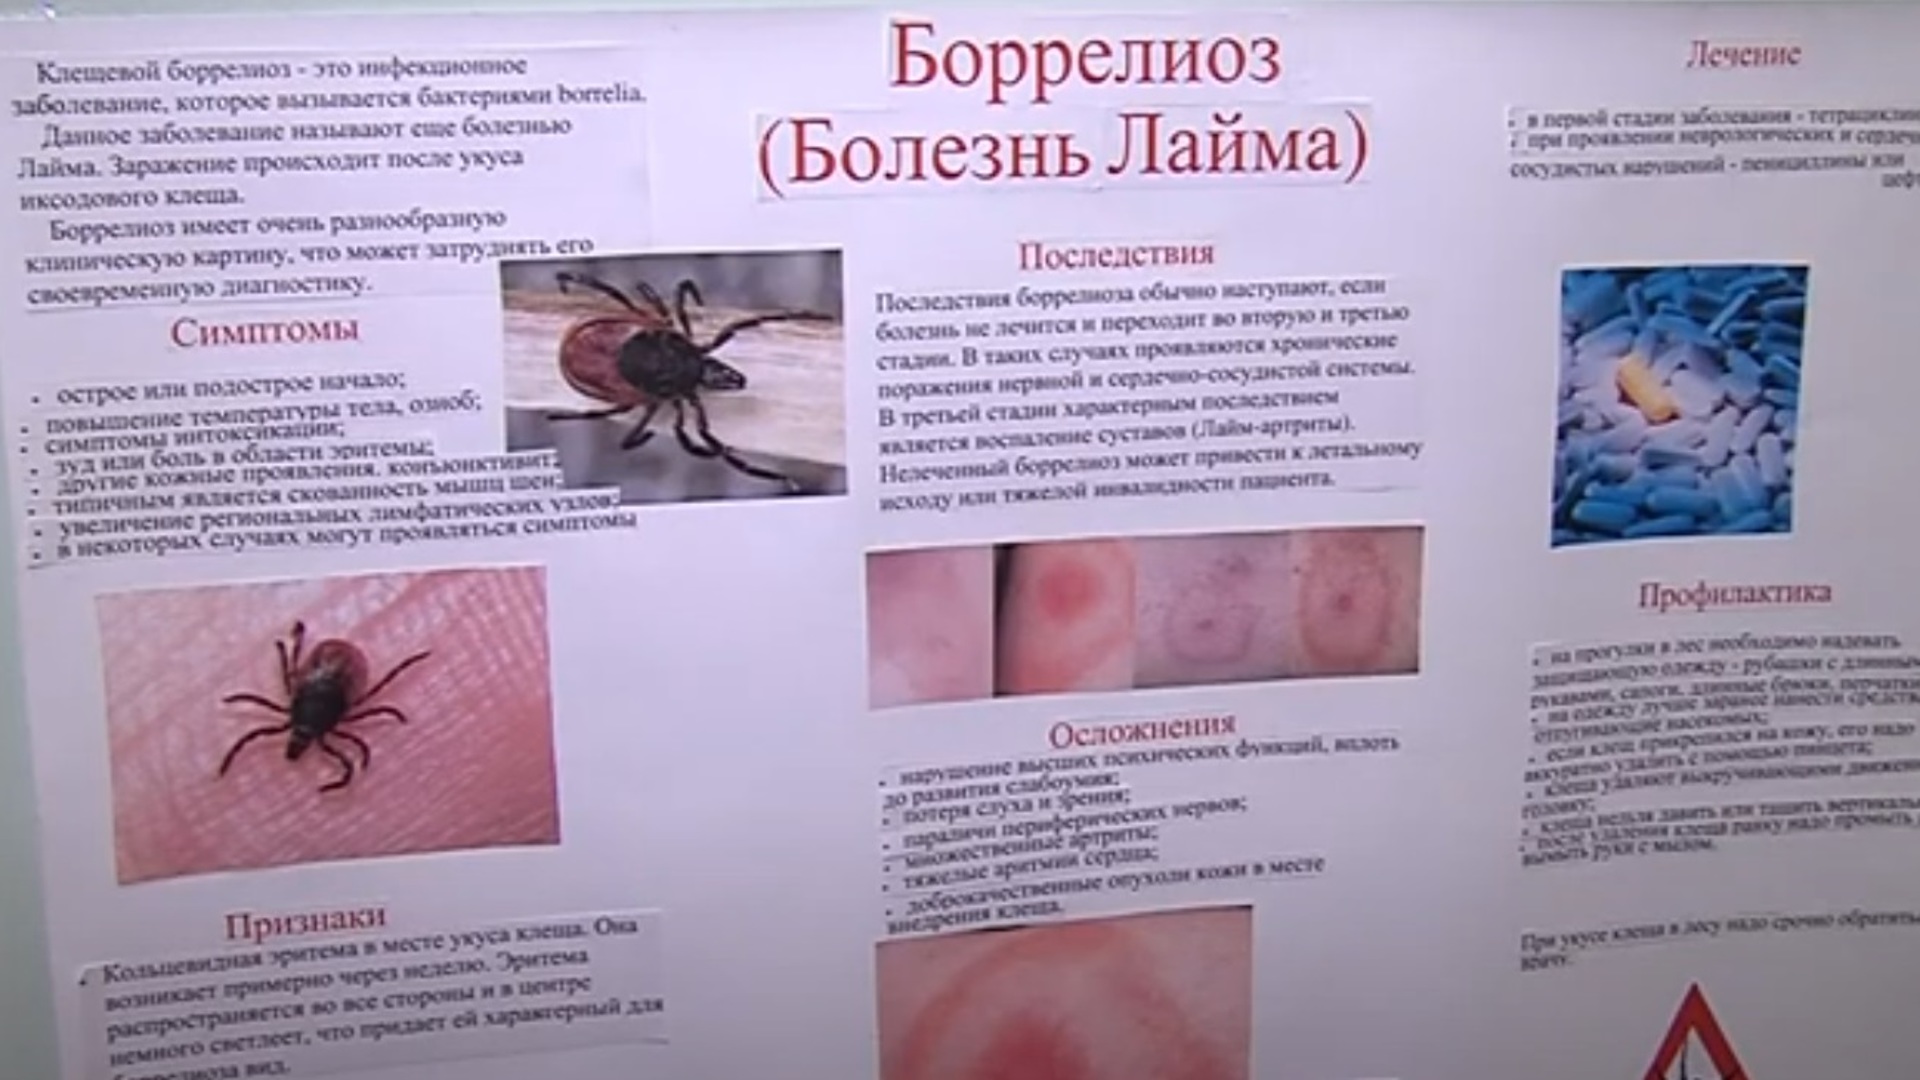 ❶ 80 адресов клиник, куда можно сдать клеща в субъектах российской федерации